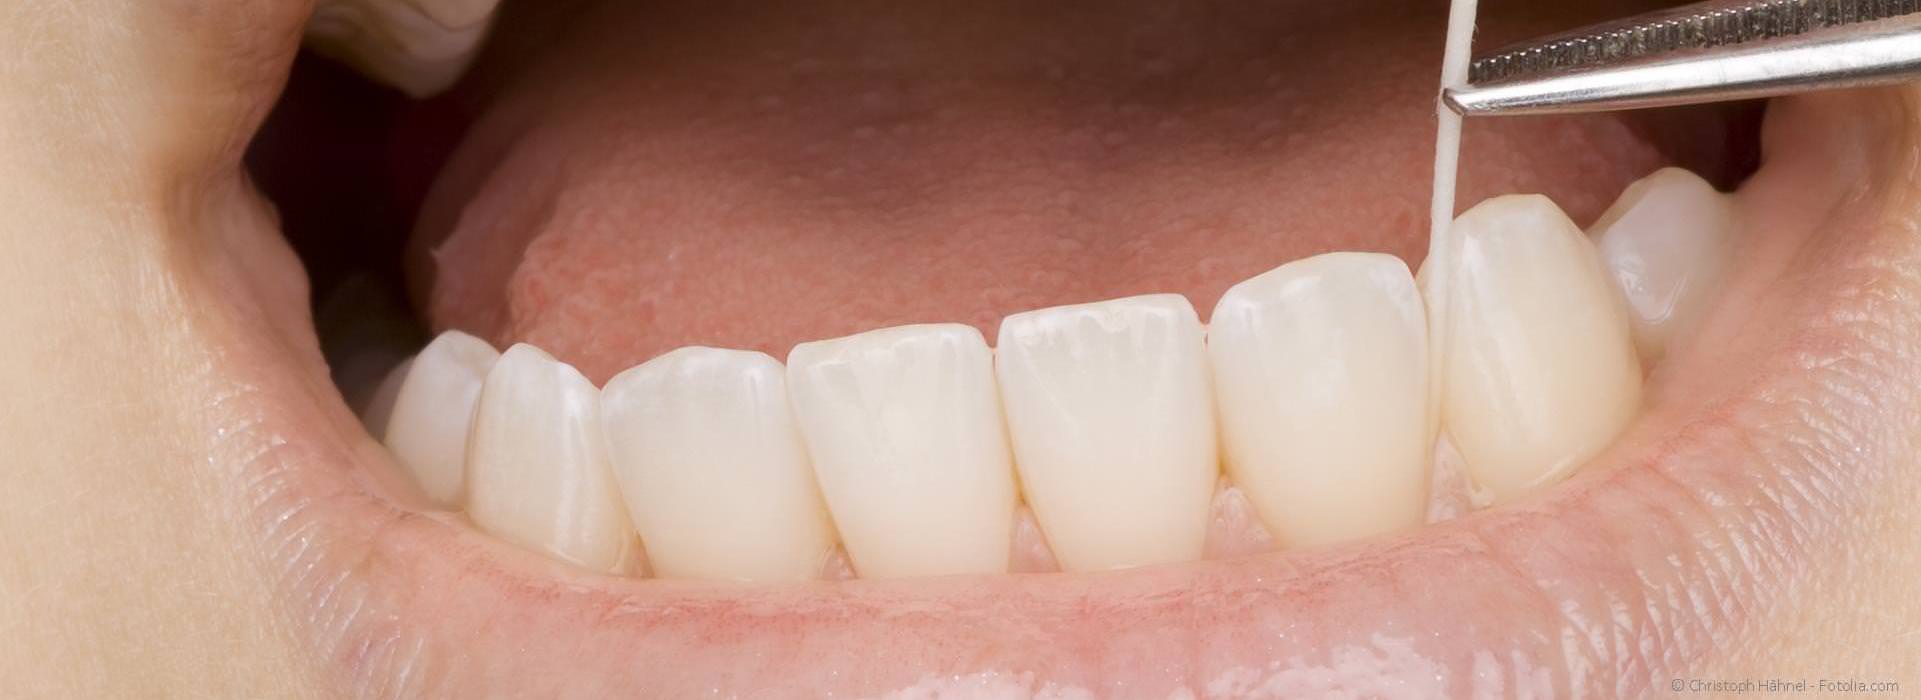 Orotox-Test: Scheiden tote und wurzelbehandelte Zähne Gifte aus?